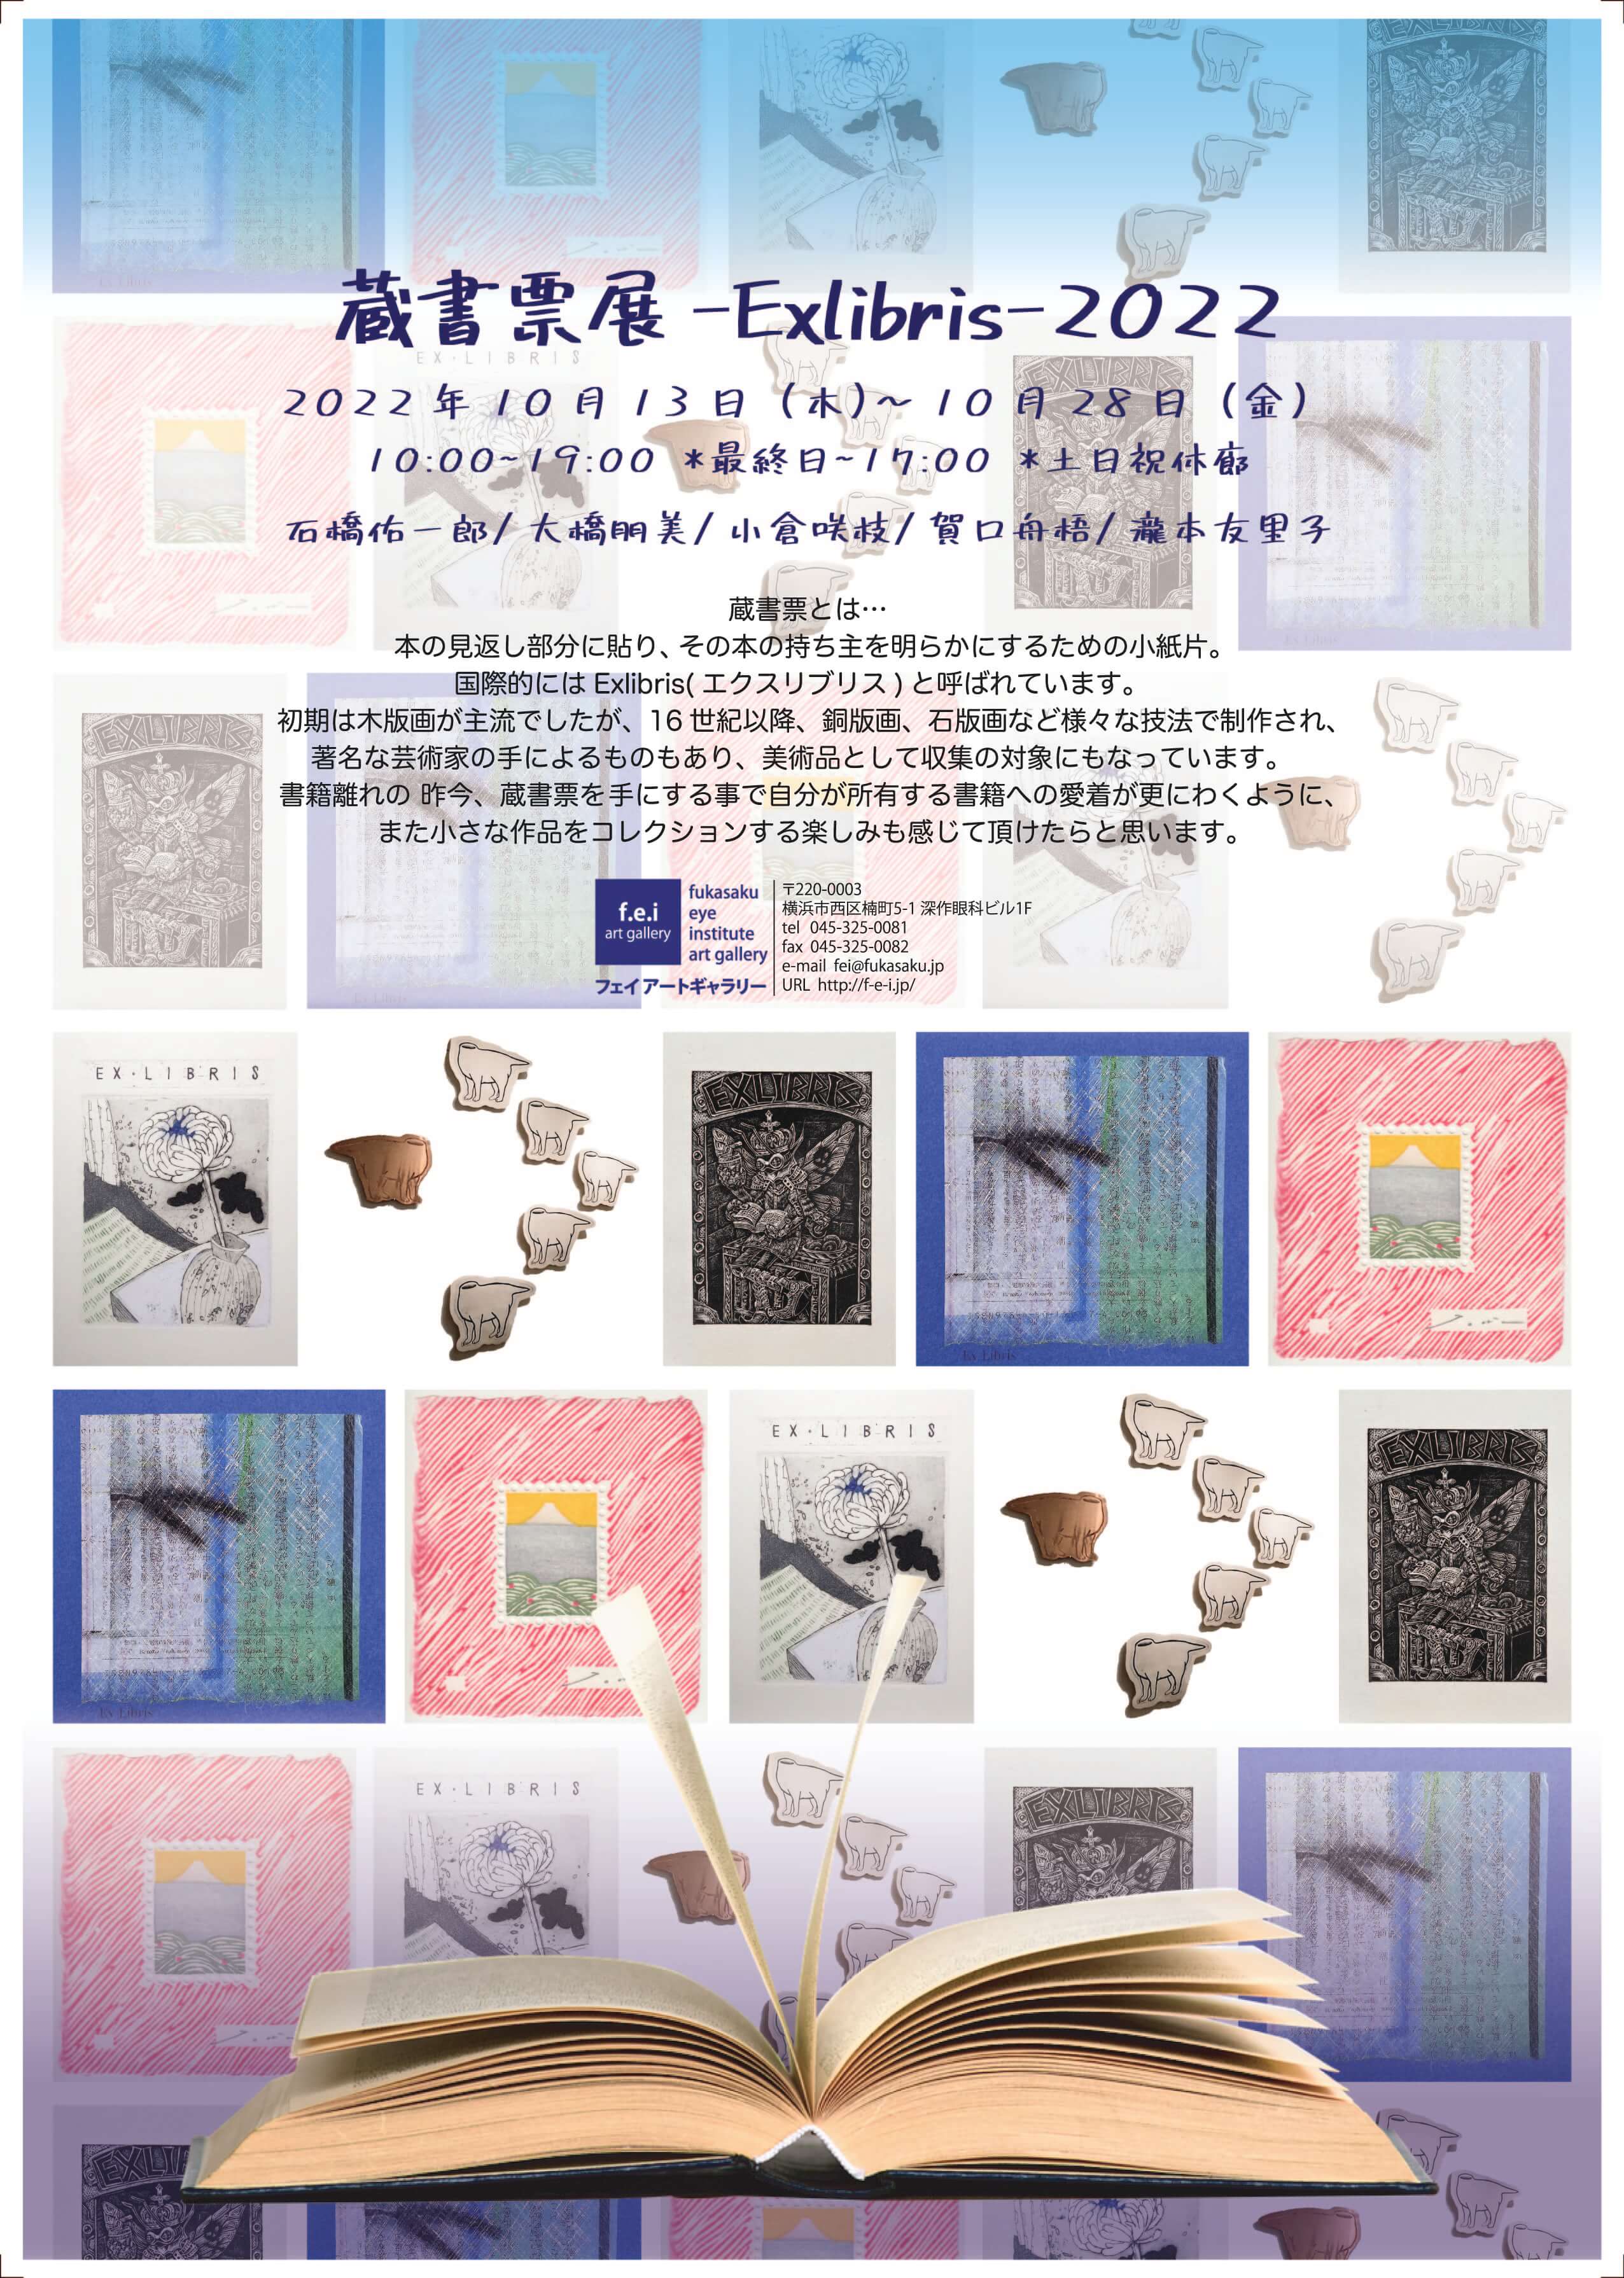 蔵書票展 -Exlibris-2022」 （Hideharu Fukasaku Gallery Yokohama 